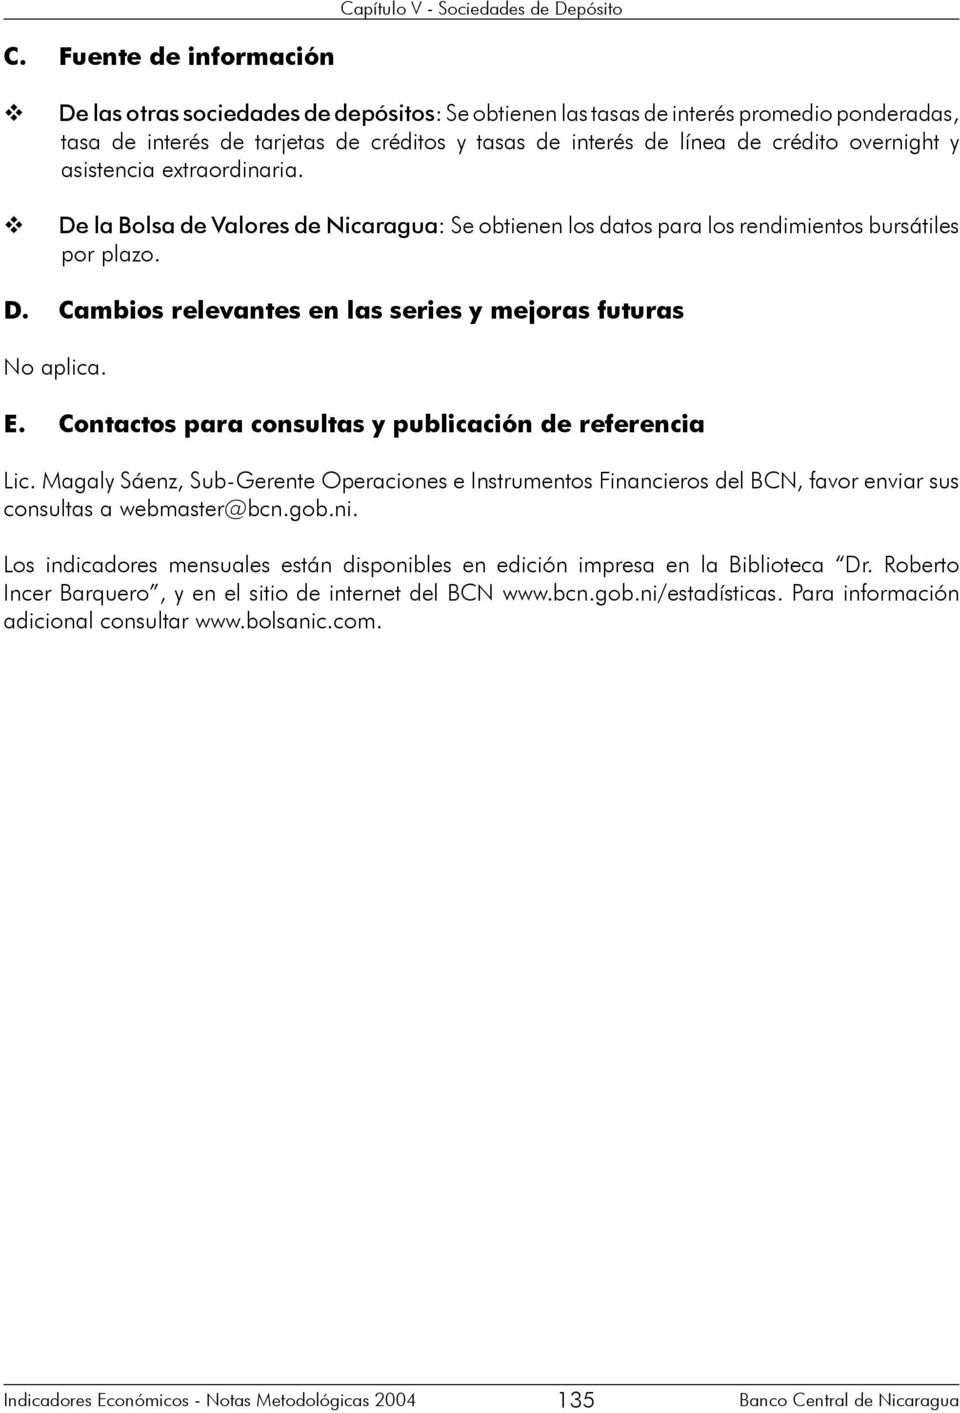 E. Contactos para consultas y publicación de referencia Lic. Magaly Sáenz, Sub-Gerente Operaciones e Instrumentos Financieros del BCN, faor enia